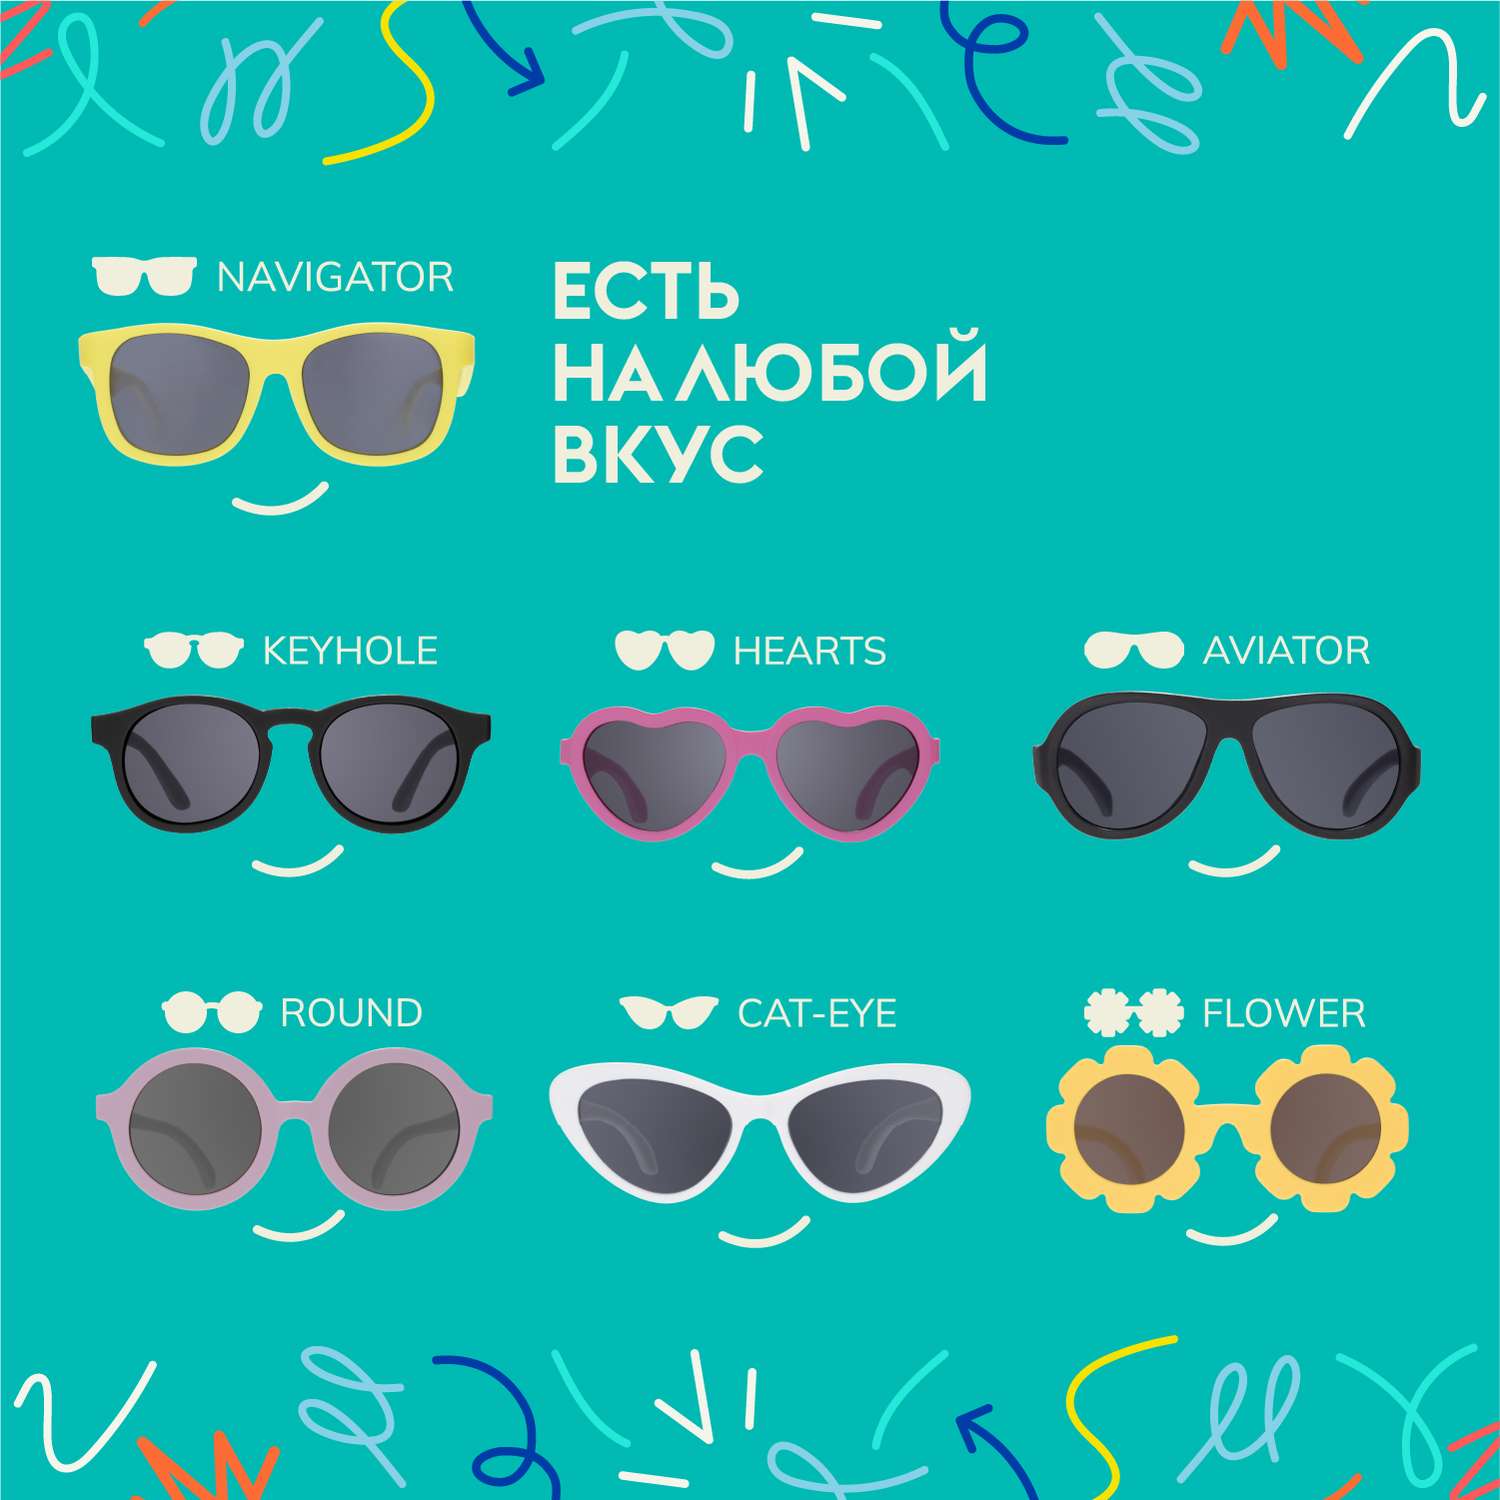 Солнцезащитные очки Babiators Navigator Printed Над радугой 0-2 LTD-059 - фото 6